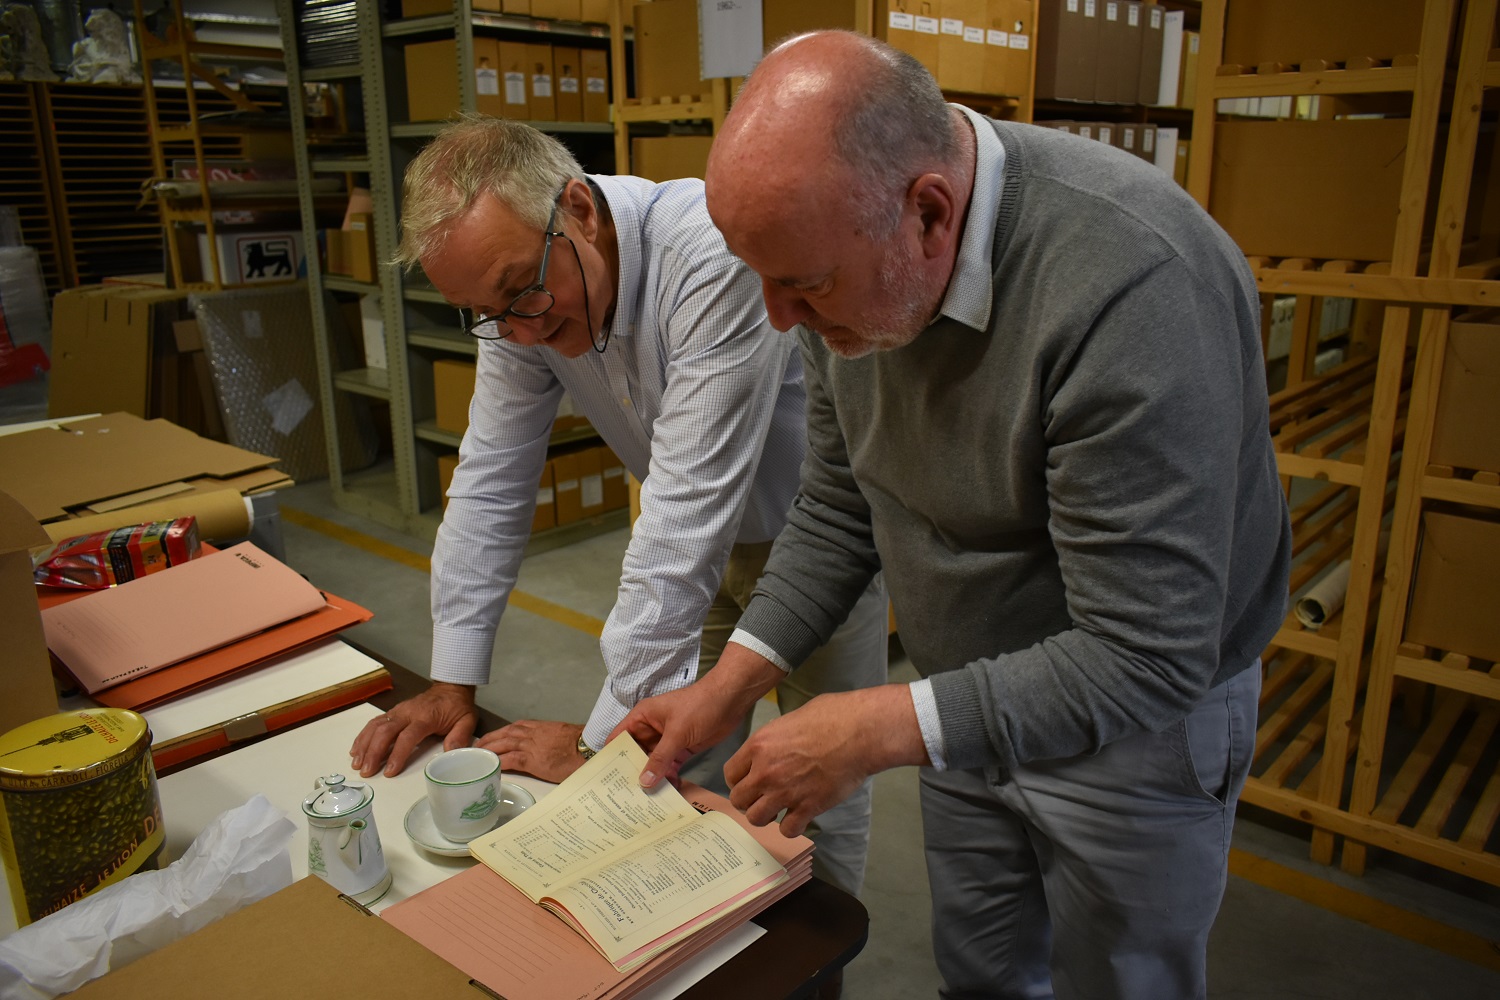 Guido bekijkt samen met de archivaris van Delhaize, Emmanuel Collet, uniek koffie-erfgoed uit deze periode.